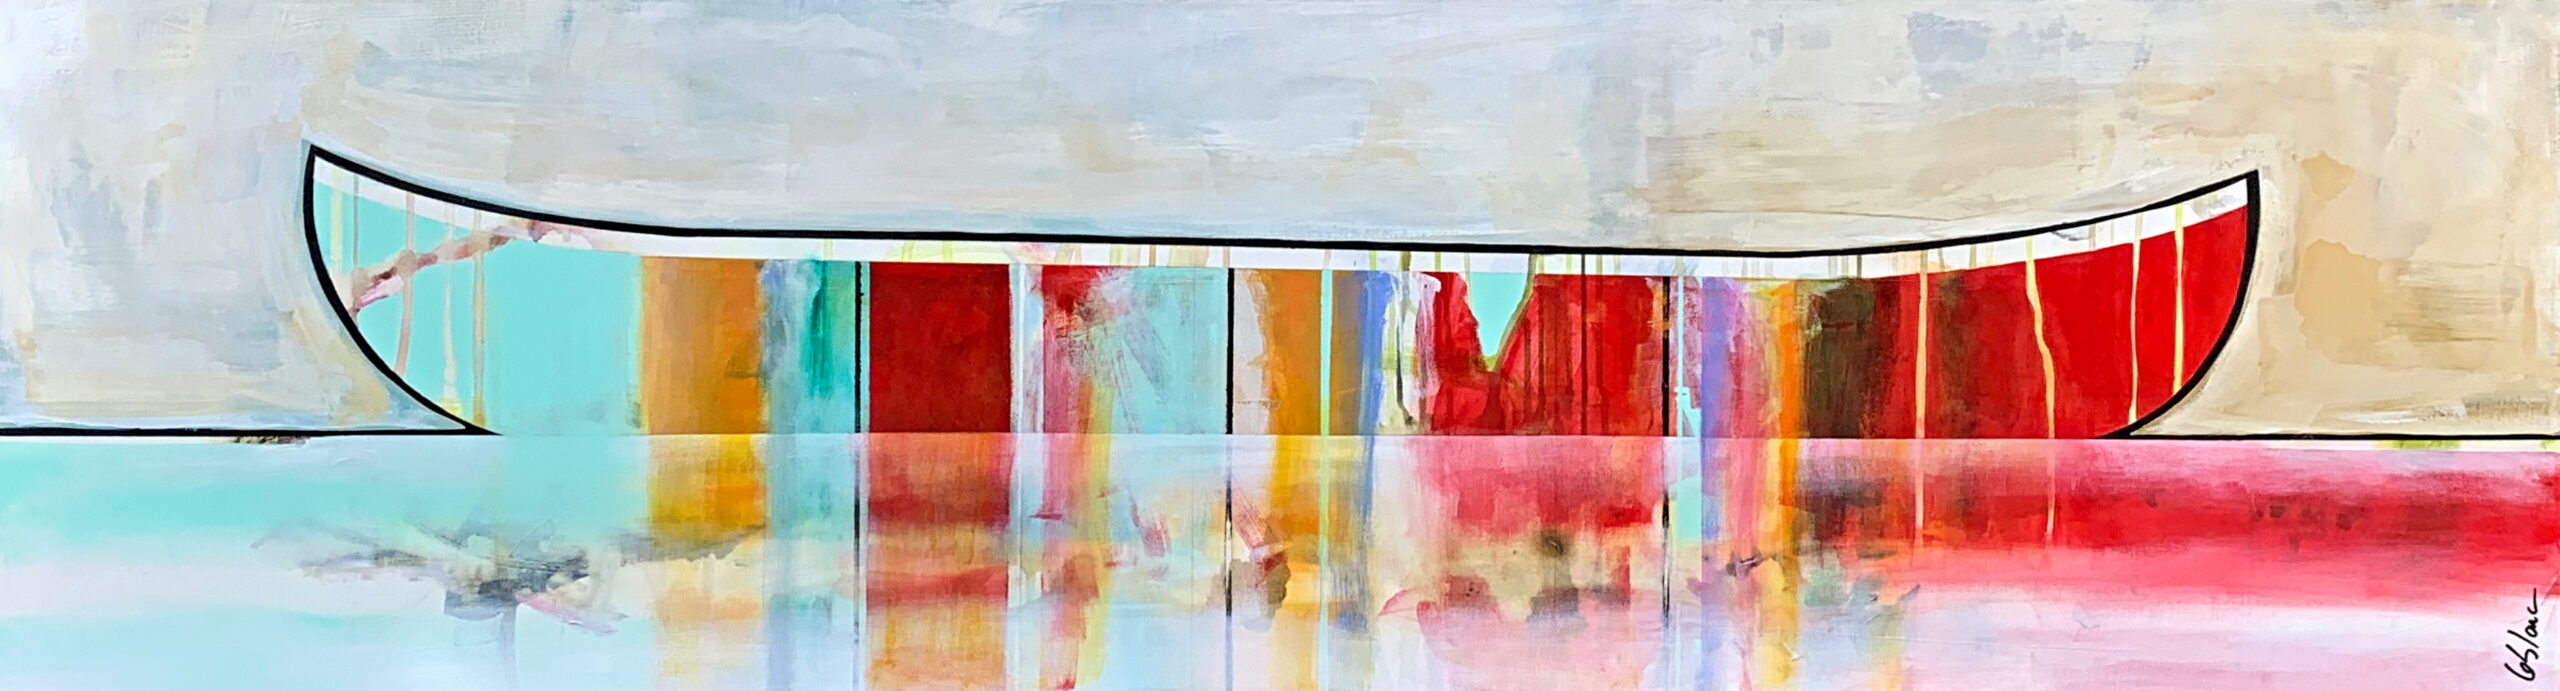 Pâle horizon by Sylvain Leblanc, 20